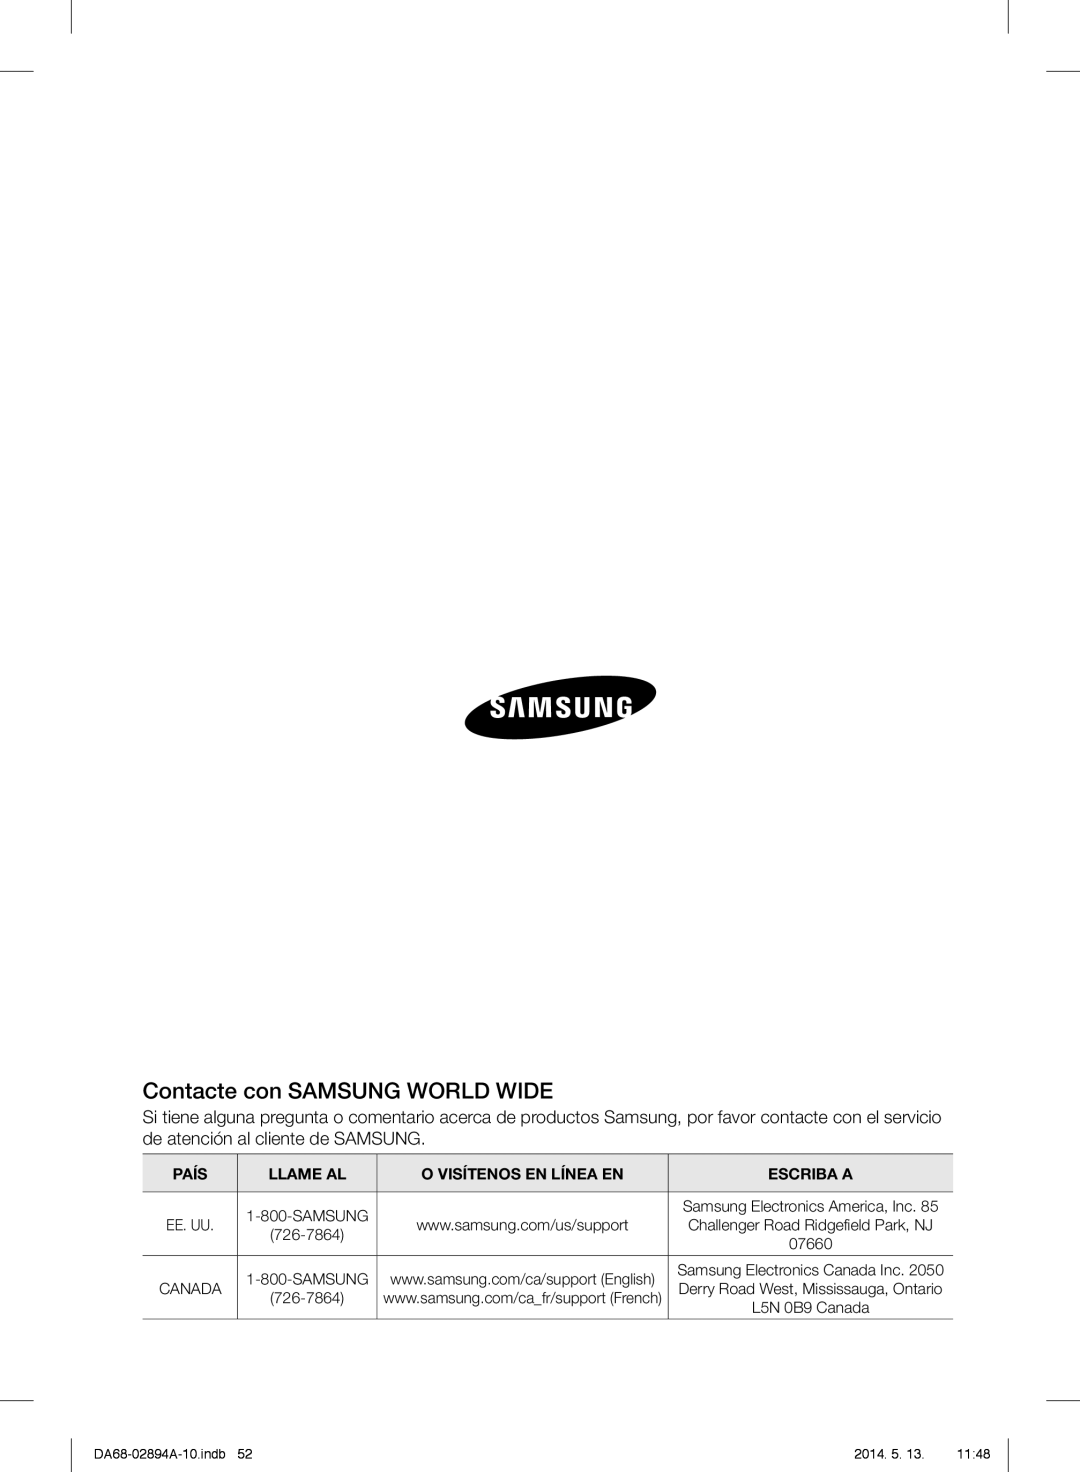 Samsung RF31FMESBSR user manual Contacte con SAMSUNG WORLD WIDE, País, Llame Al, O Visítenos En Línea En, Escriba A 